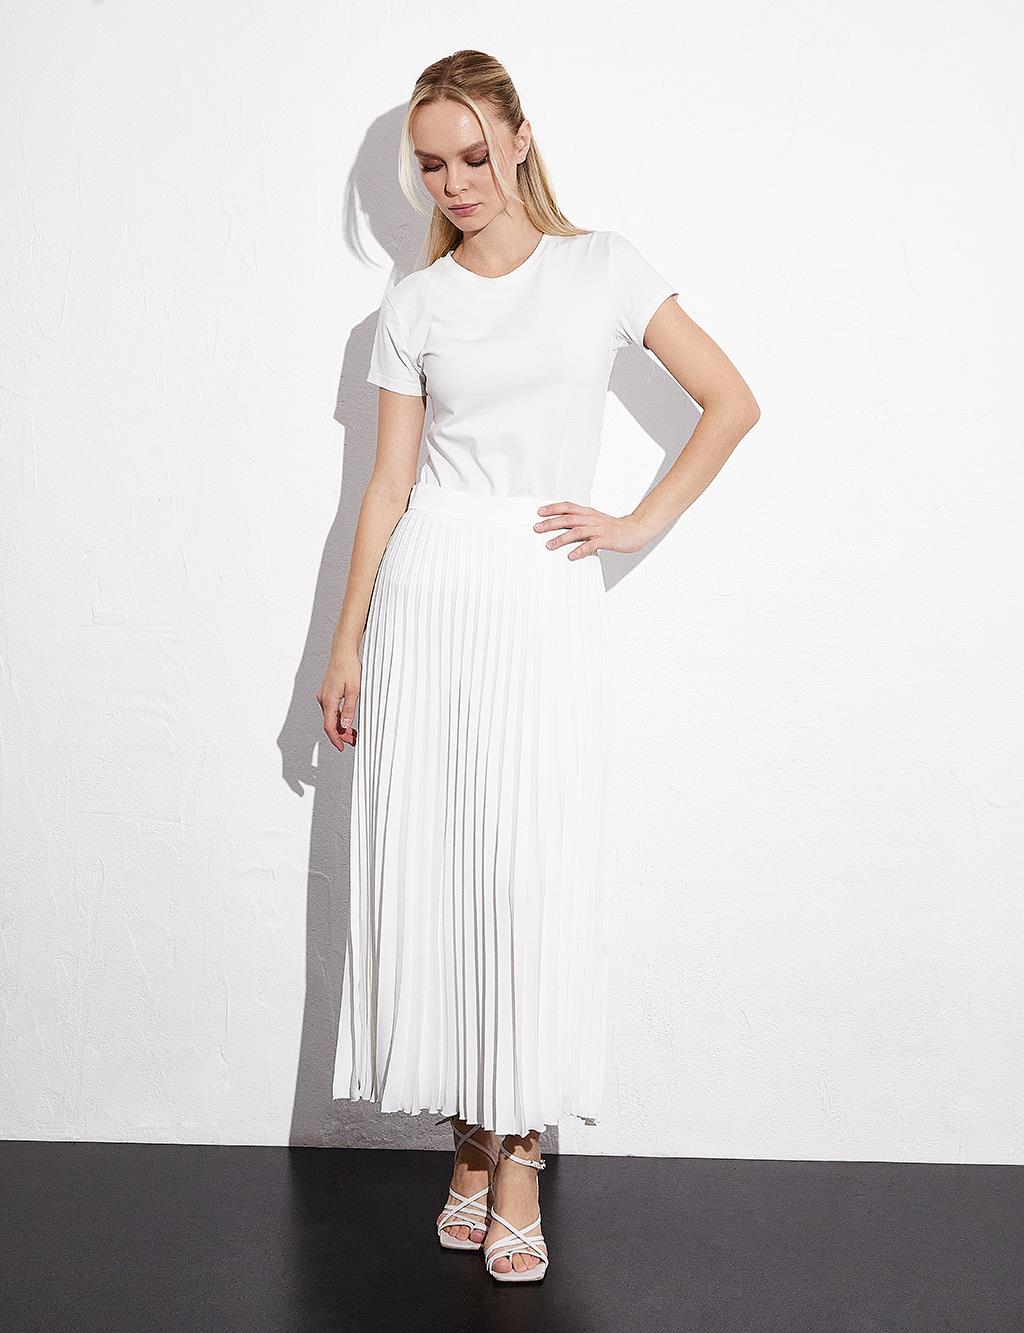 Атласная плиссированная юбка цвета экрю Kayra плиссированная юбка на пуговицах цвета бежевого песка kayra